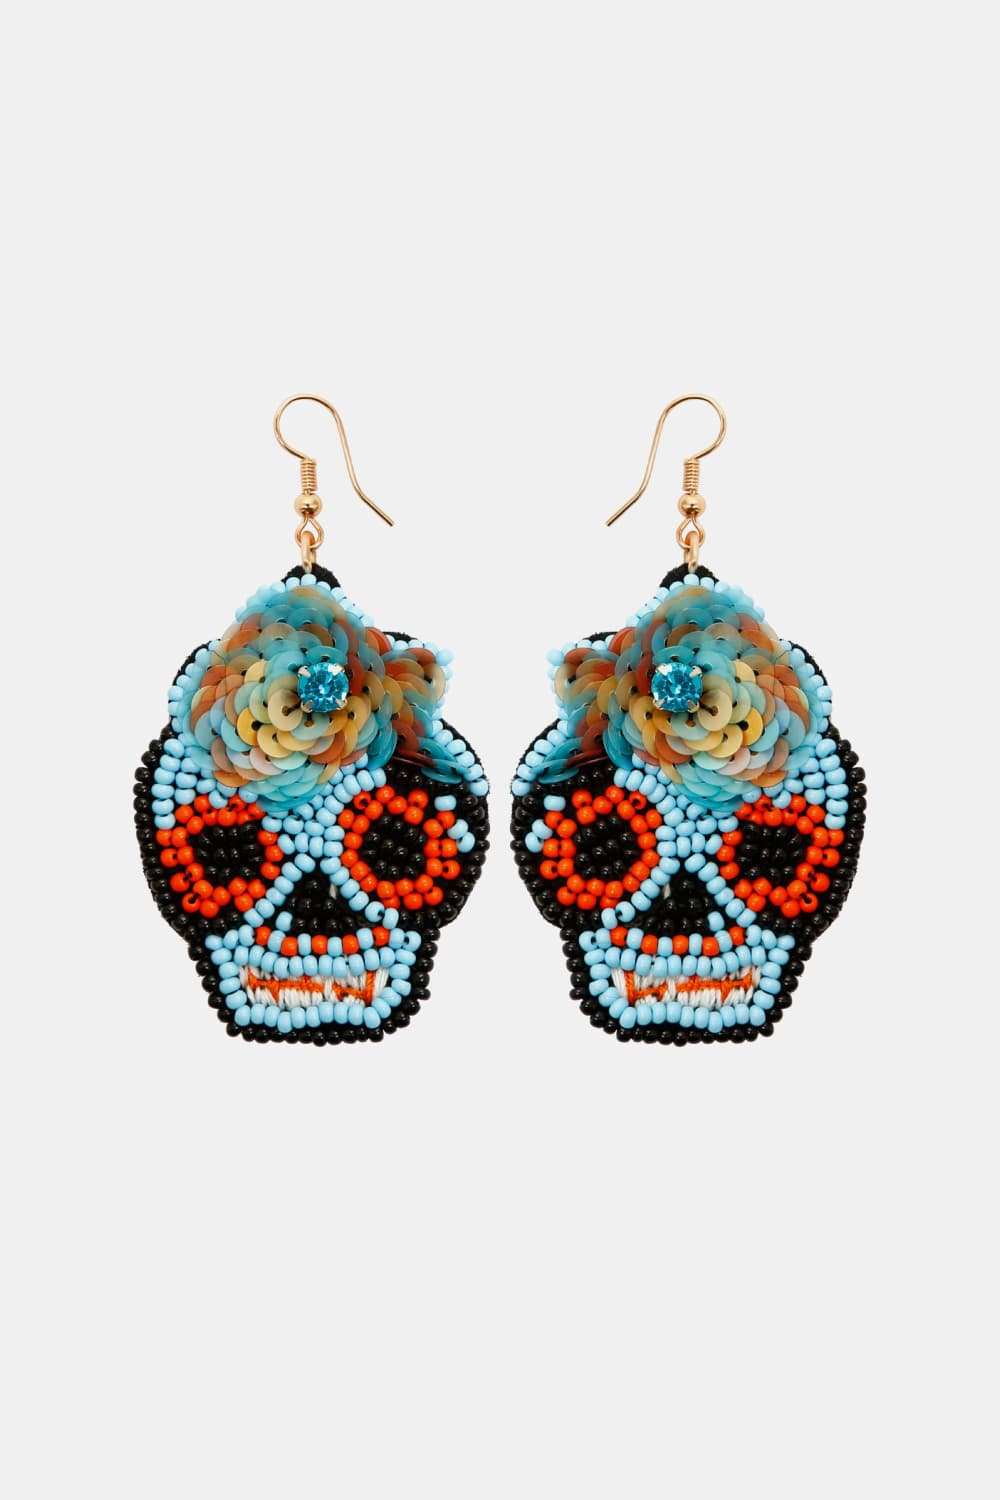 Copper Beaded Detail Dangle Earrings - Blue / One Size - Women’s Jewelry - Earrings - 7 - 2024